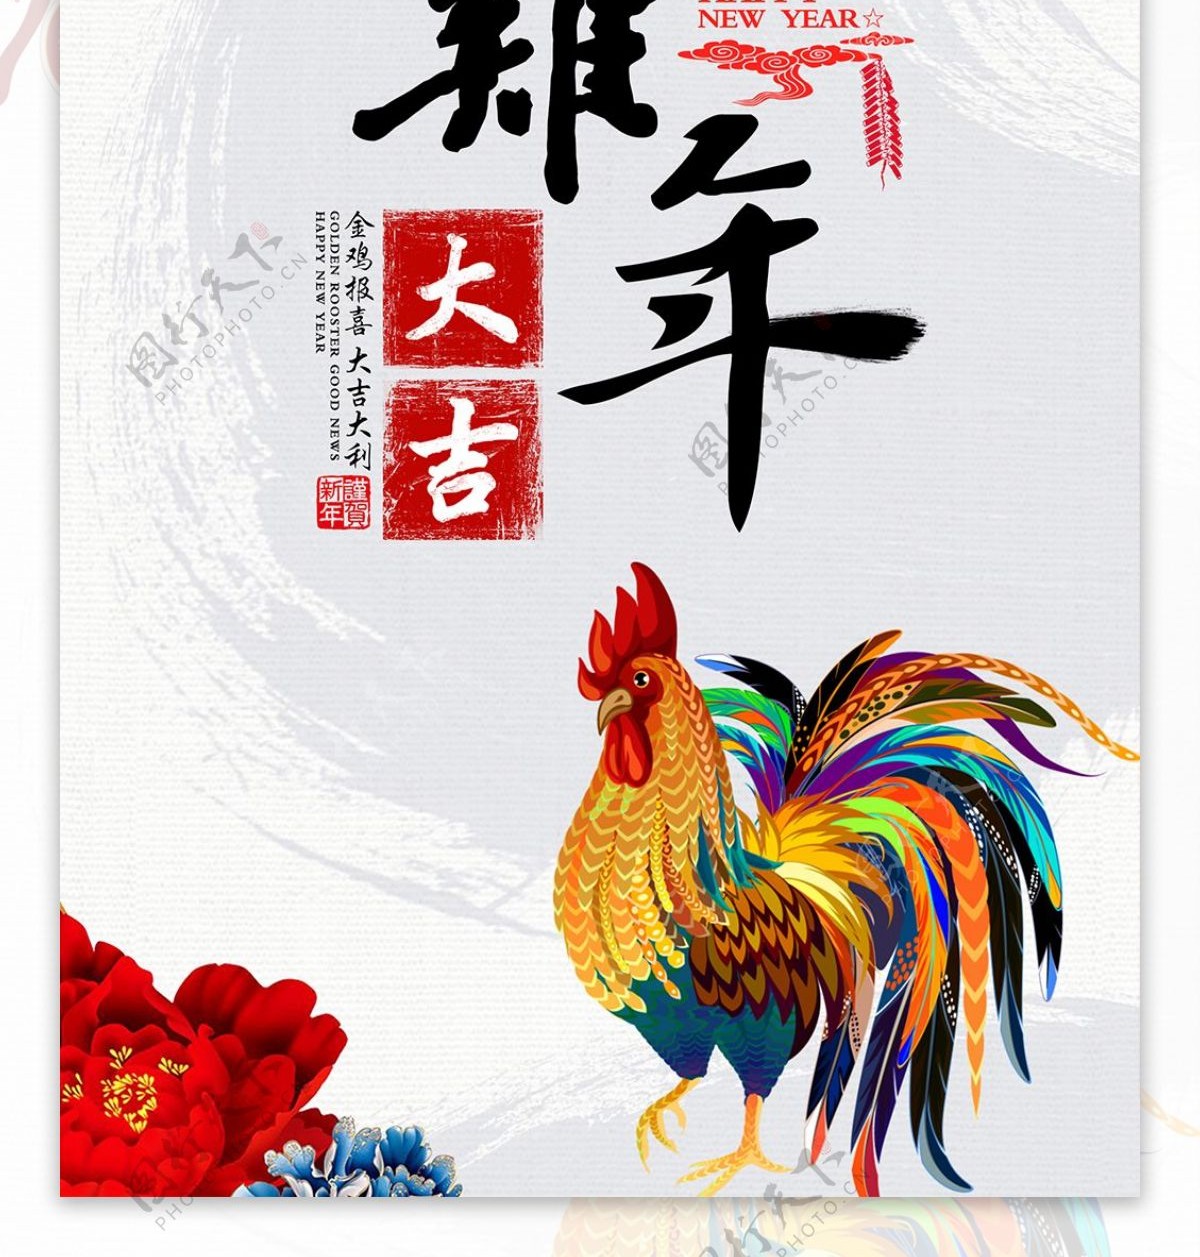 2017鸡年大吉新年促销海报